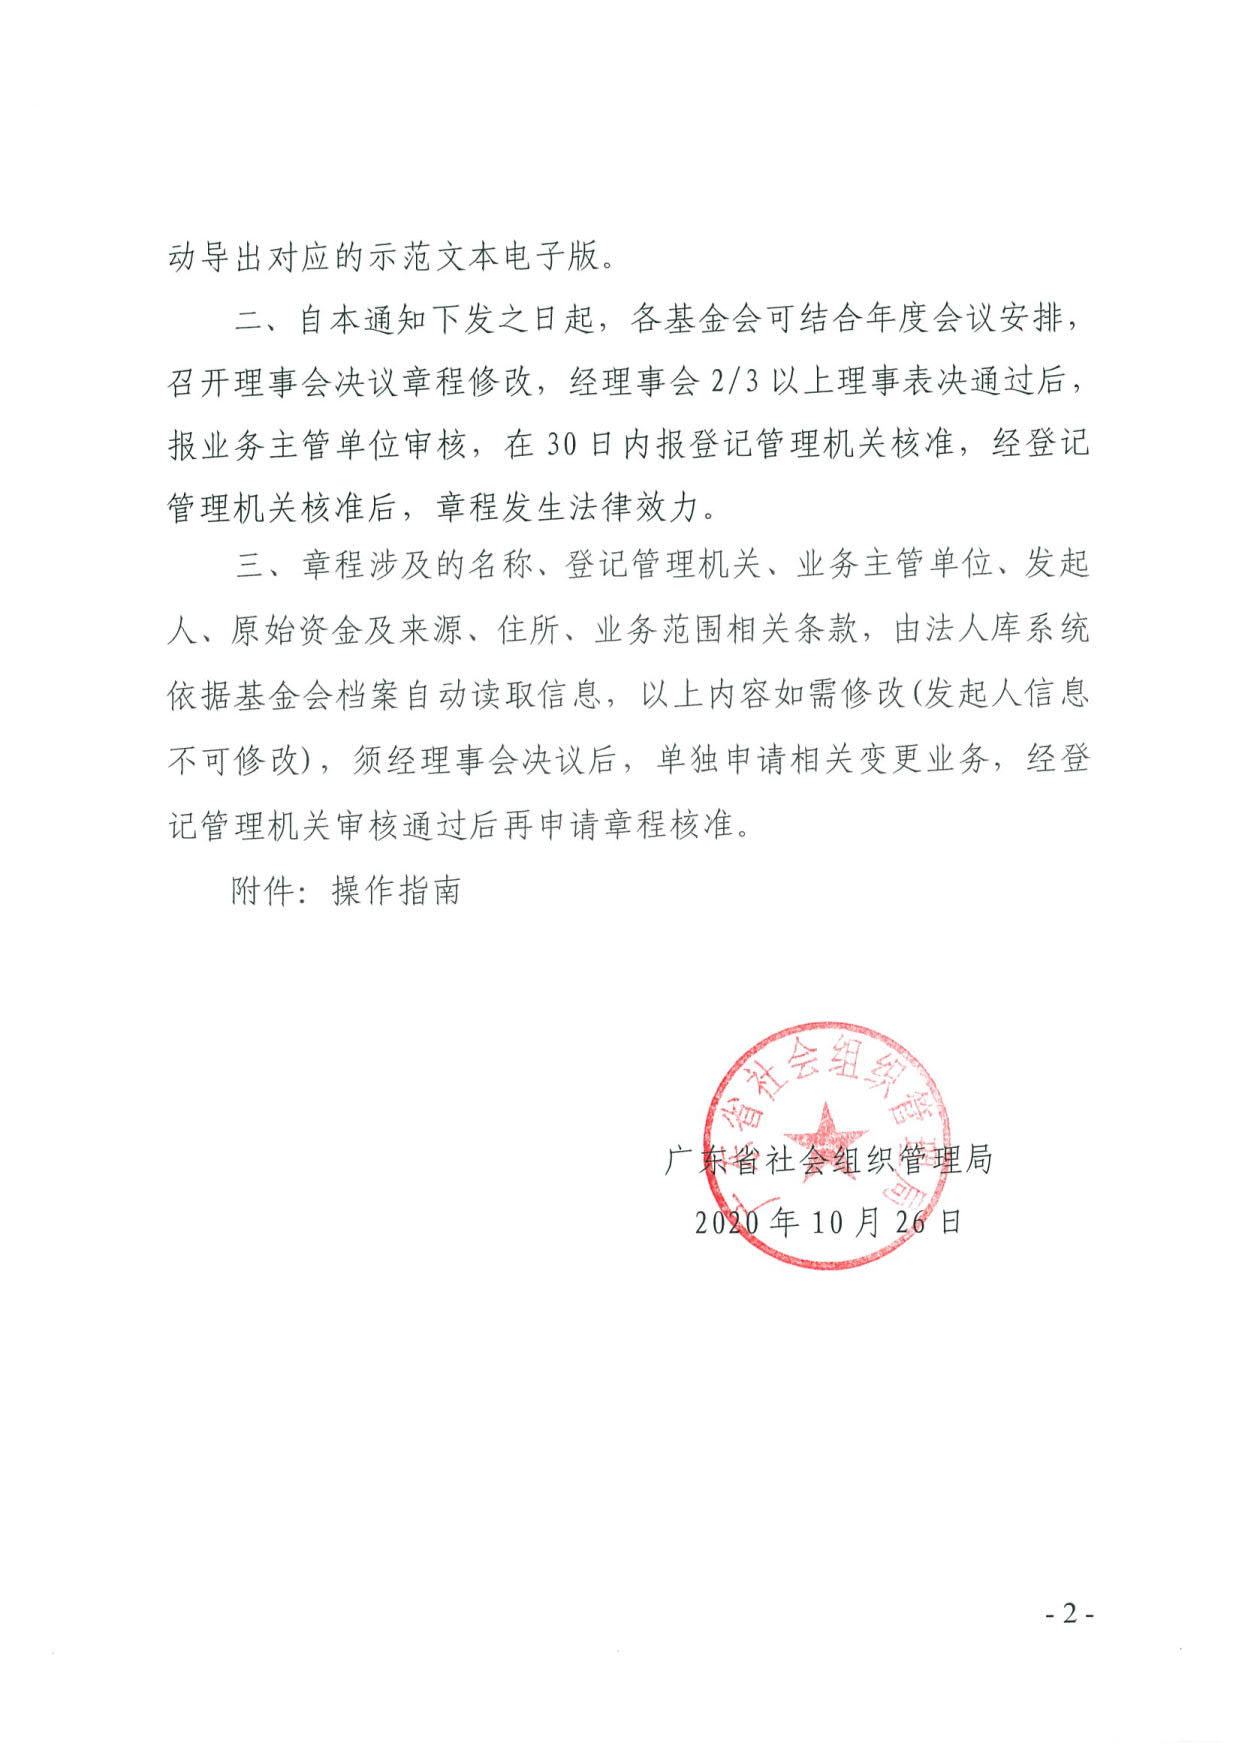 广东省社会组织管理局关于更新基金会章程核准等申报流程的通知(2)_2.jpg